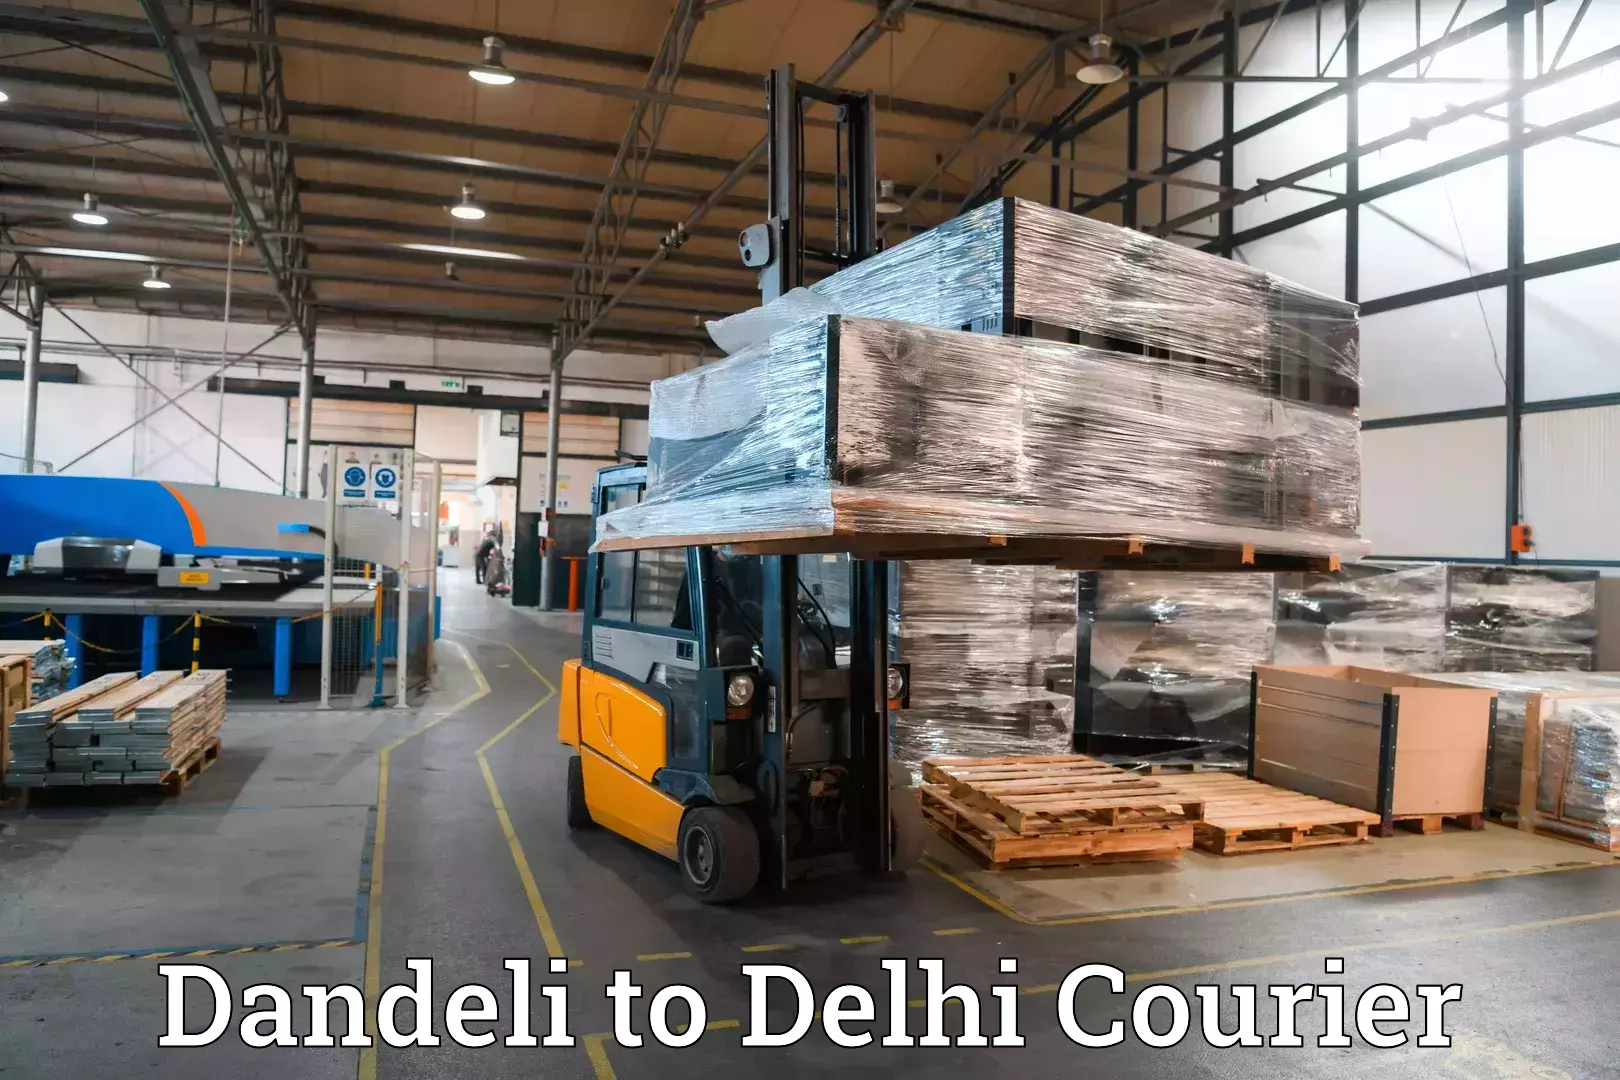 Luggage transfer service Dandeli to Delhi